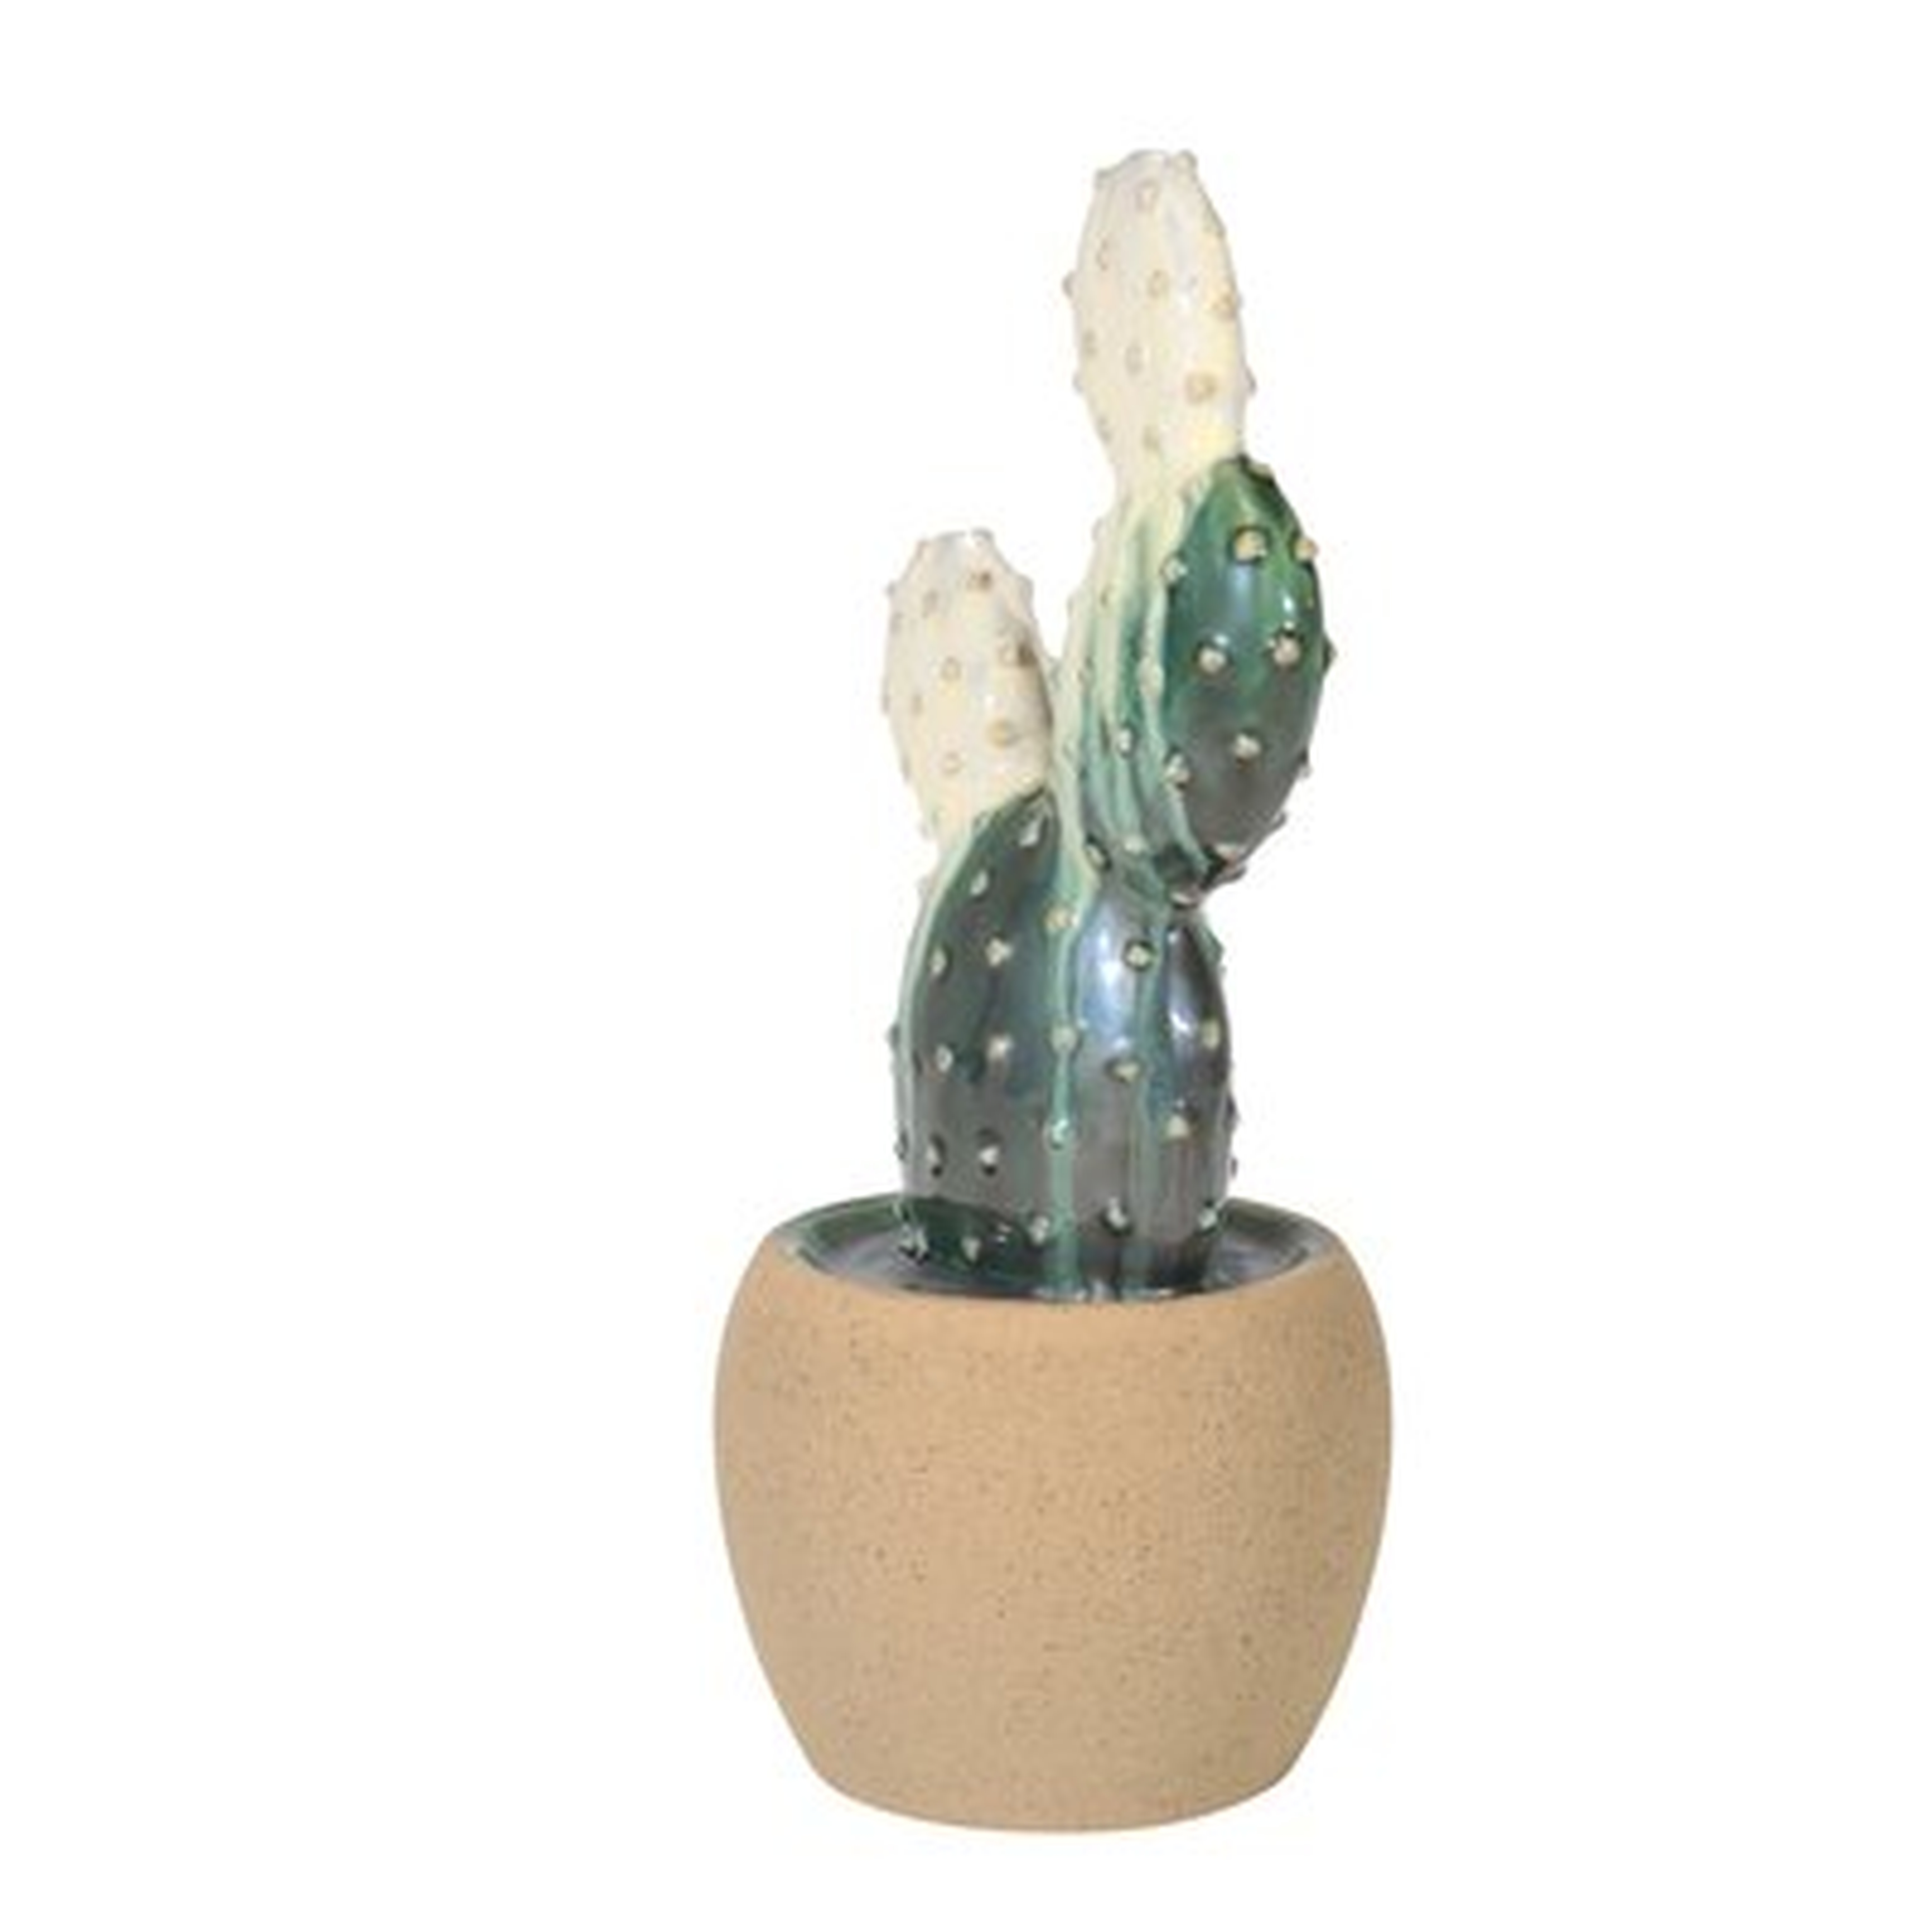 Schell Modern Ceramic Cactus Decoration Sculpture - AllModern